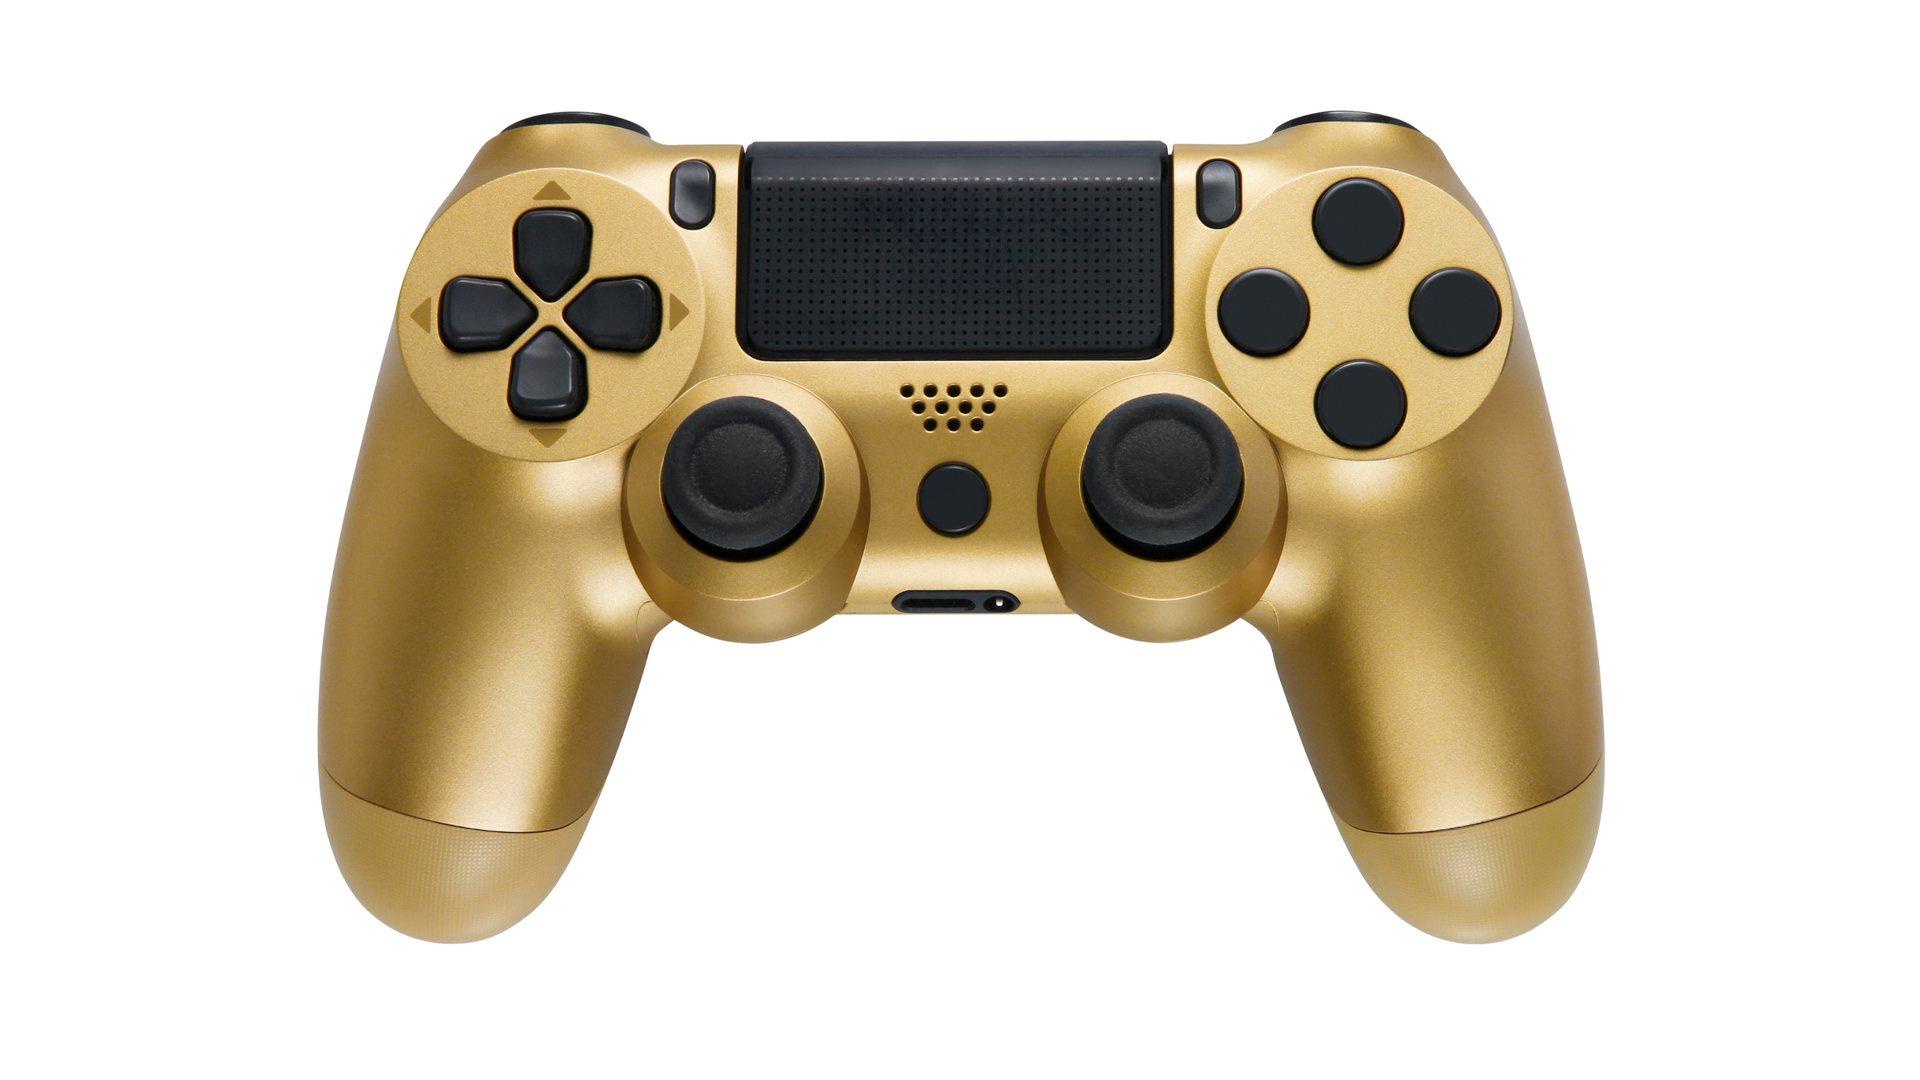 A golden game controller